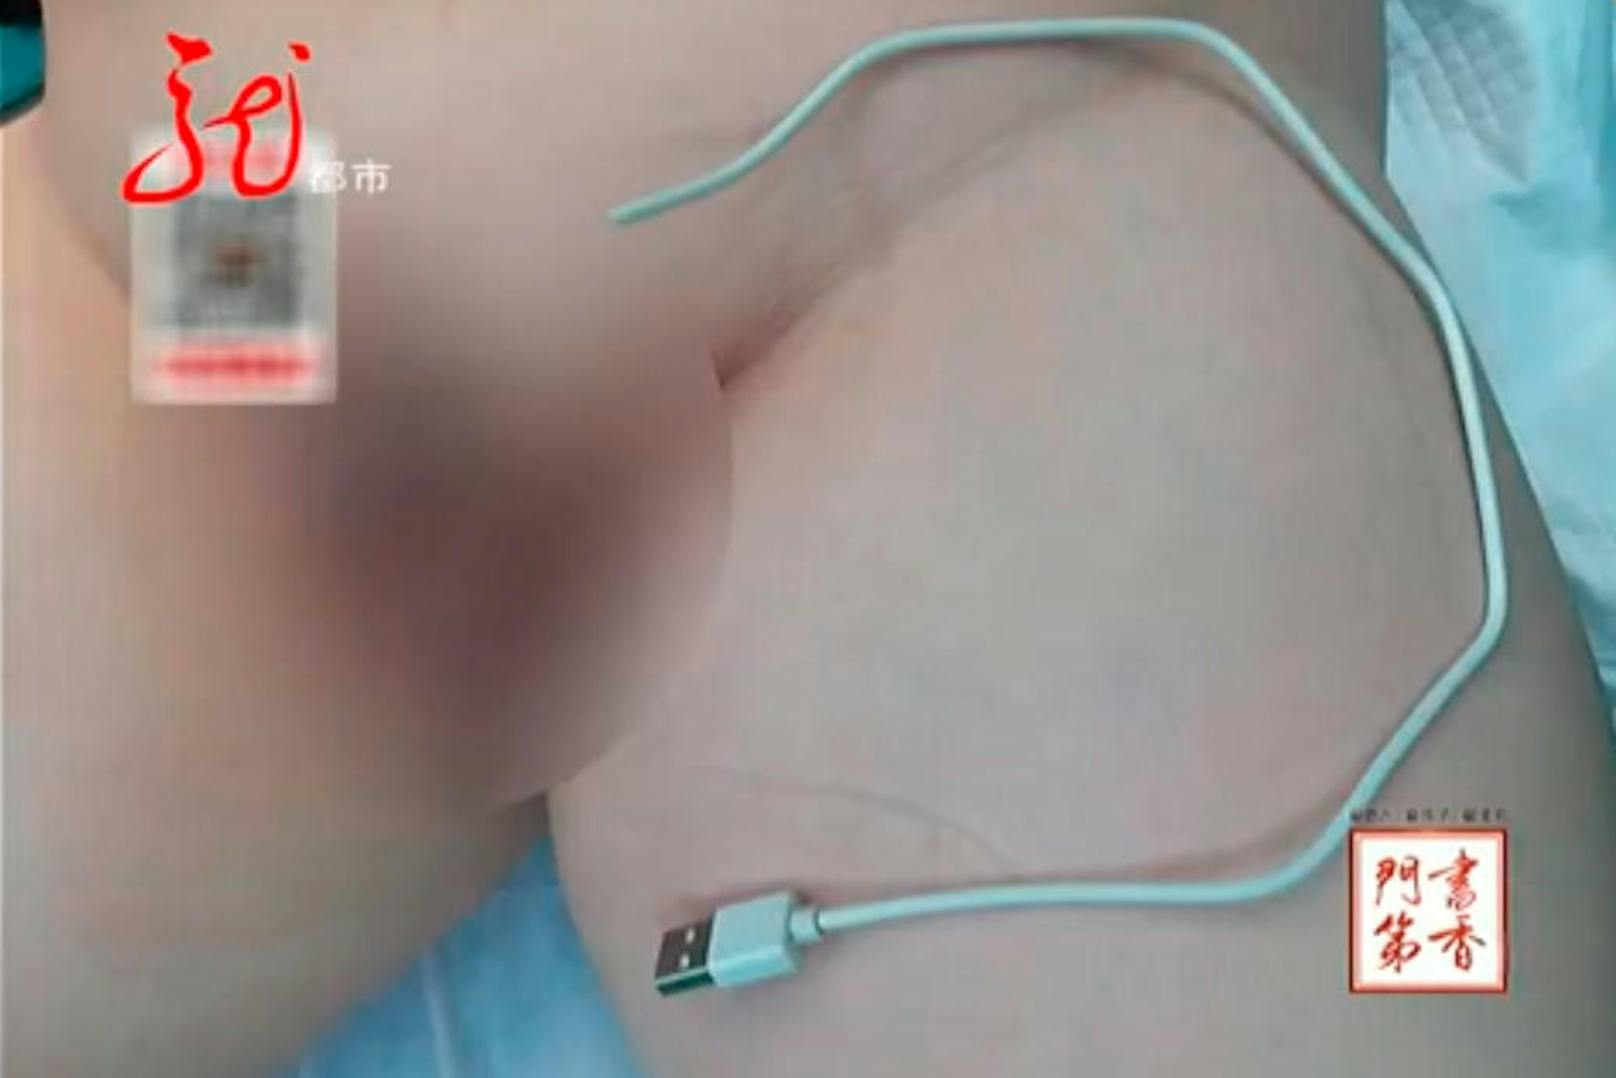 Die Ärzte im Harbin-Kinder-Spital in China dürften sich ein wenig gewundert haben: Sie hatten es mit einem 13-Jährigen zu tun, der ein USB-Kabel in seinen Penis eingeführt hatte und es nicht wieder herausziehen konnte - es steckte fest.